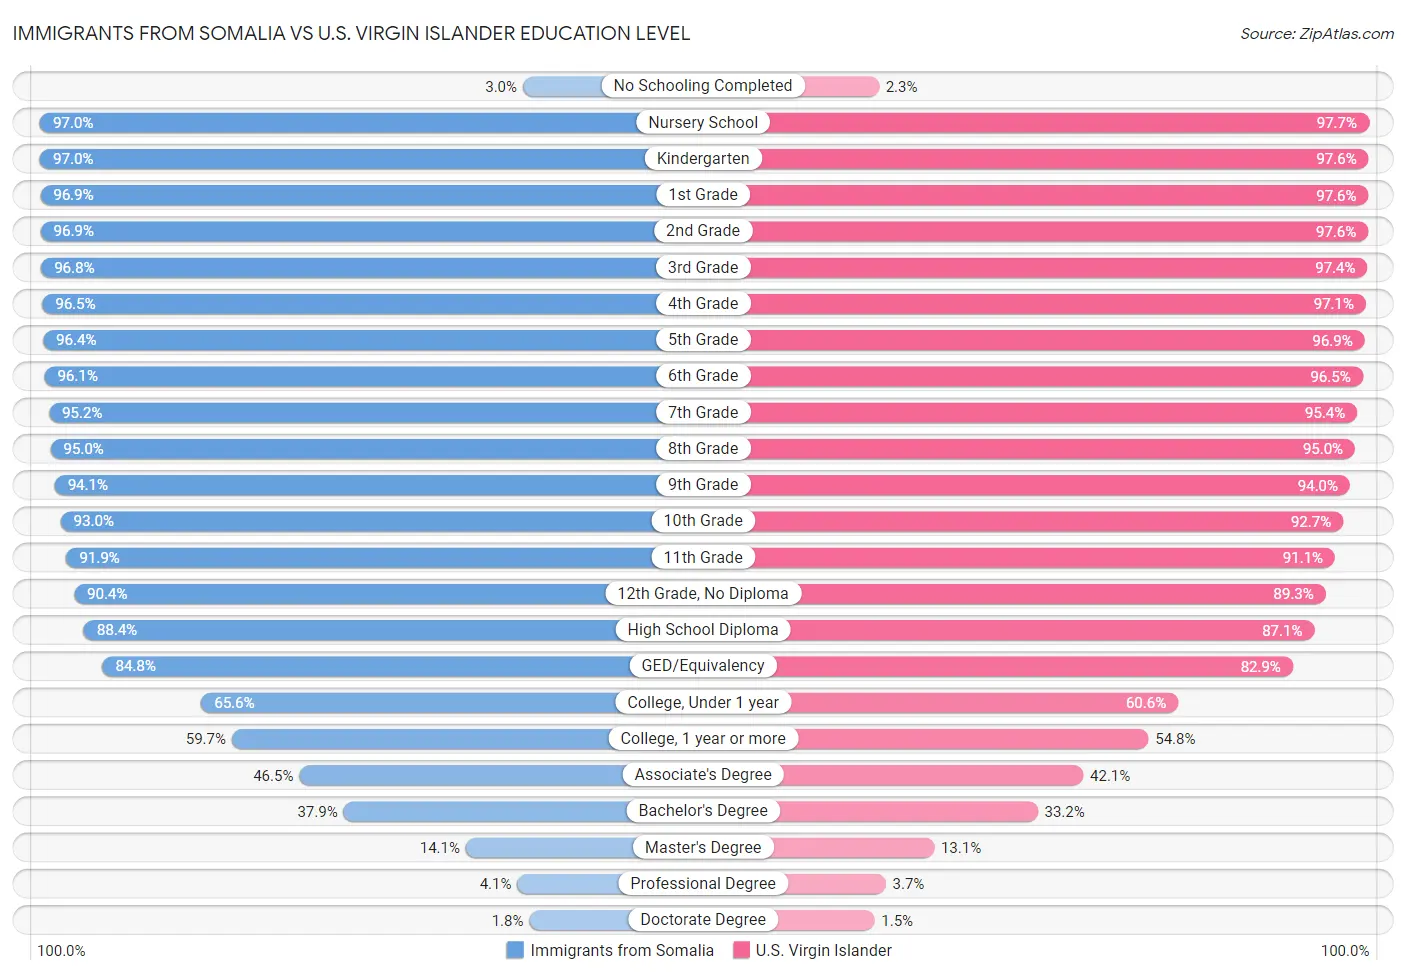 Immigrants from Somalia vs U.S. Virgin Islander Education Level